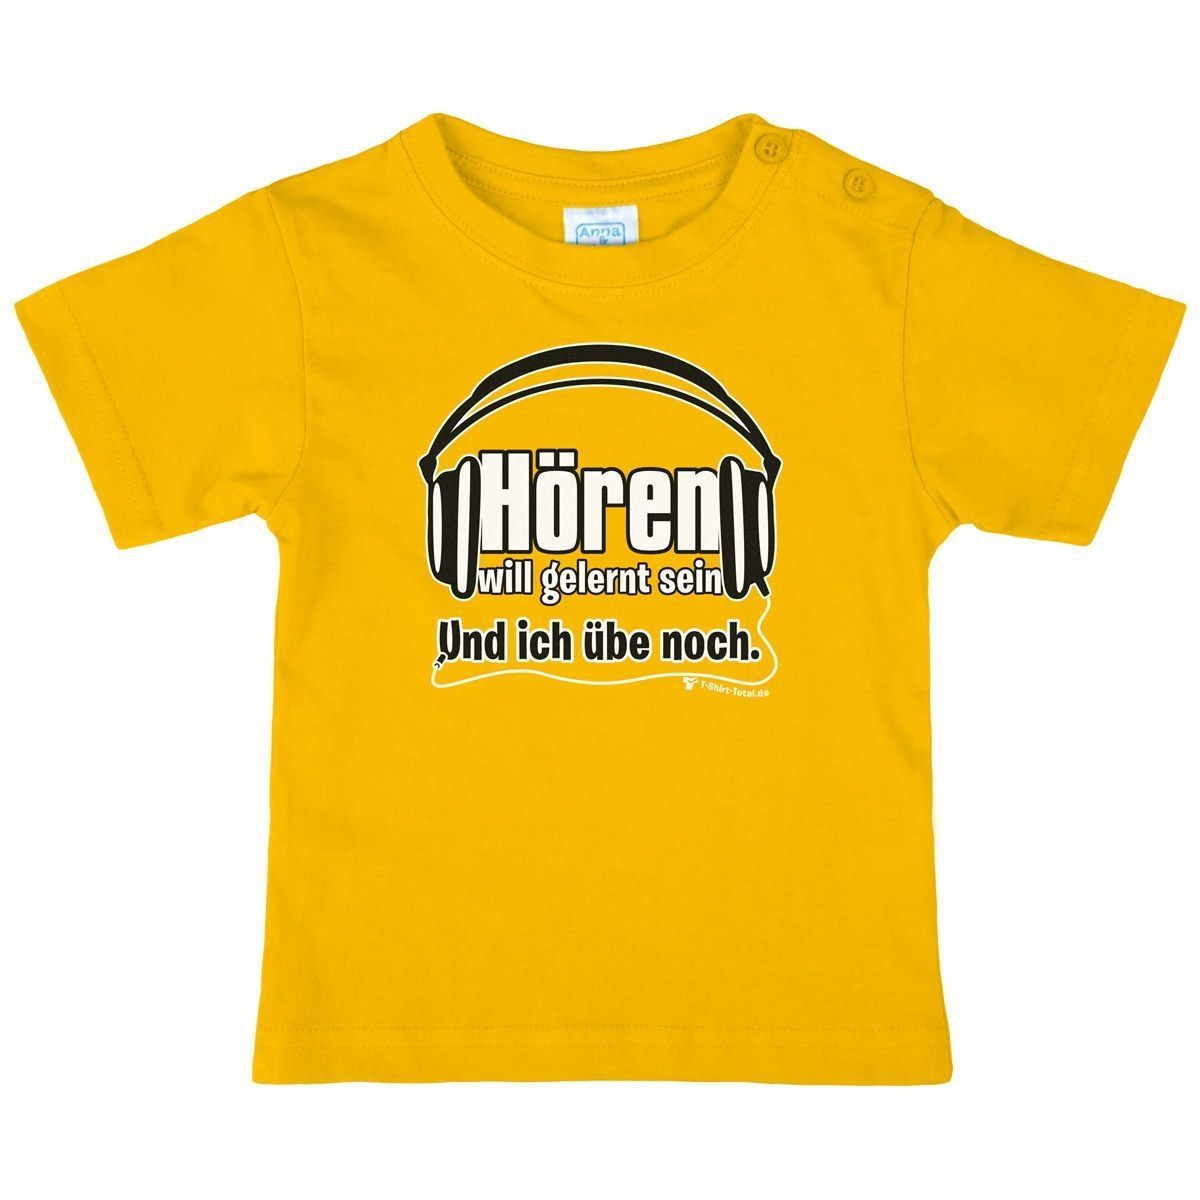 Hören will gelernt sein Kinder T-Shirt gelb 104